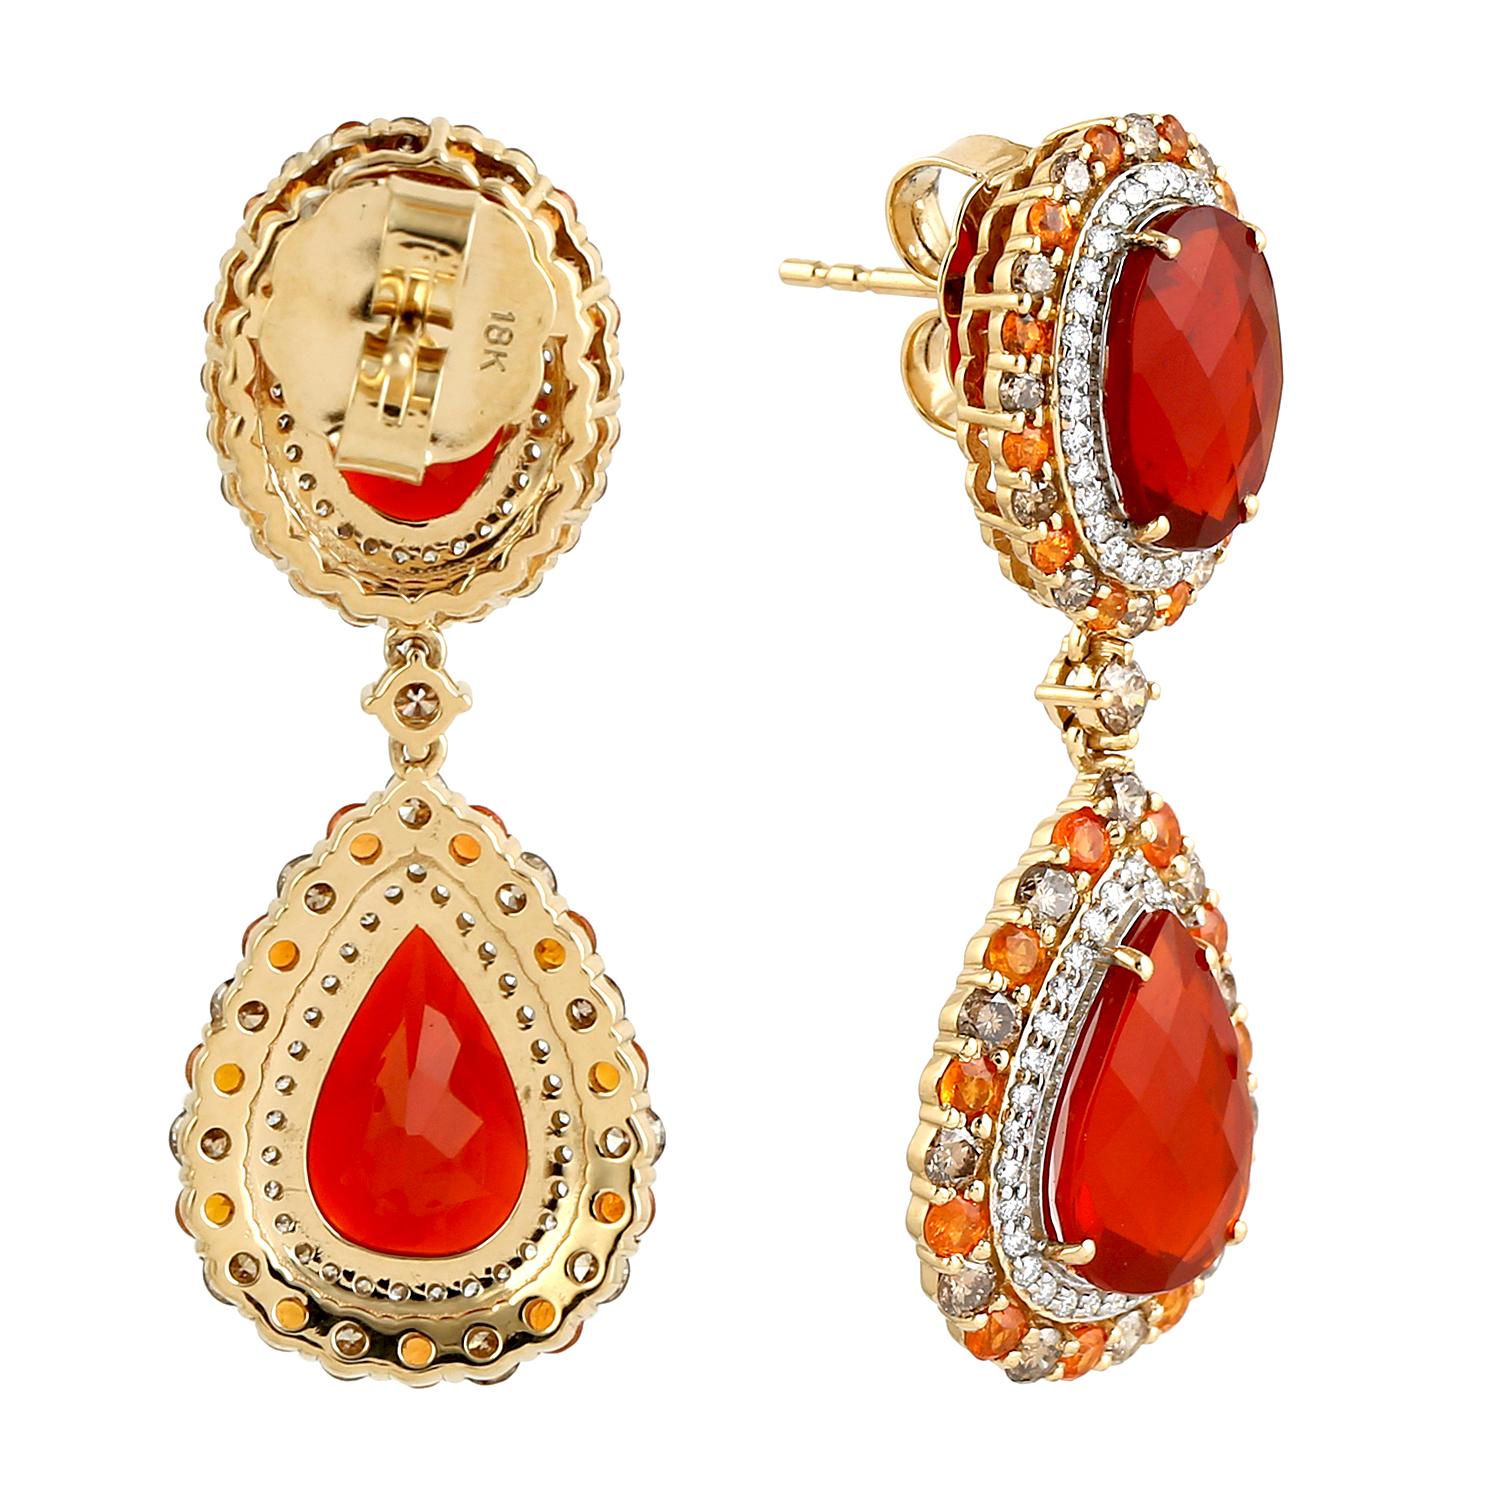 fire opal earrings for sale